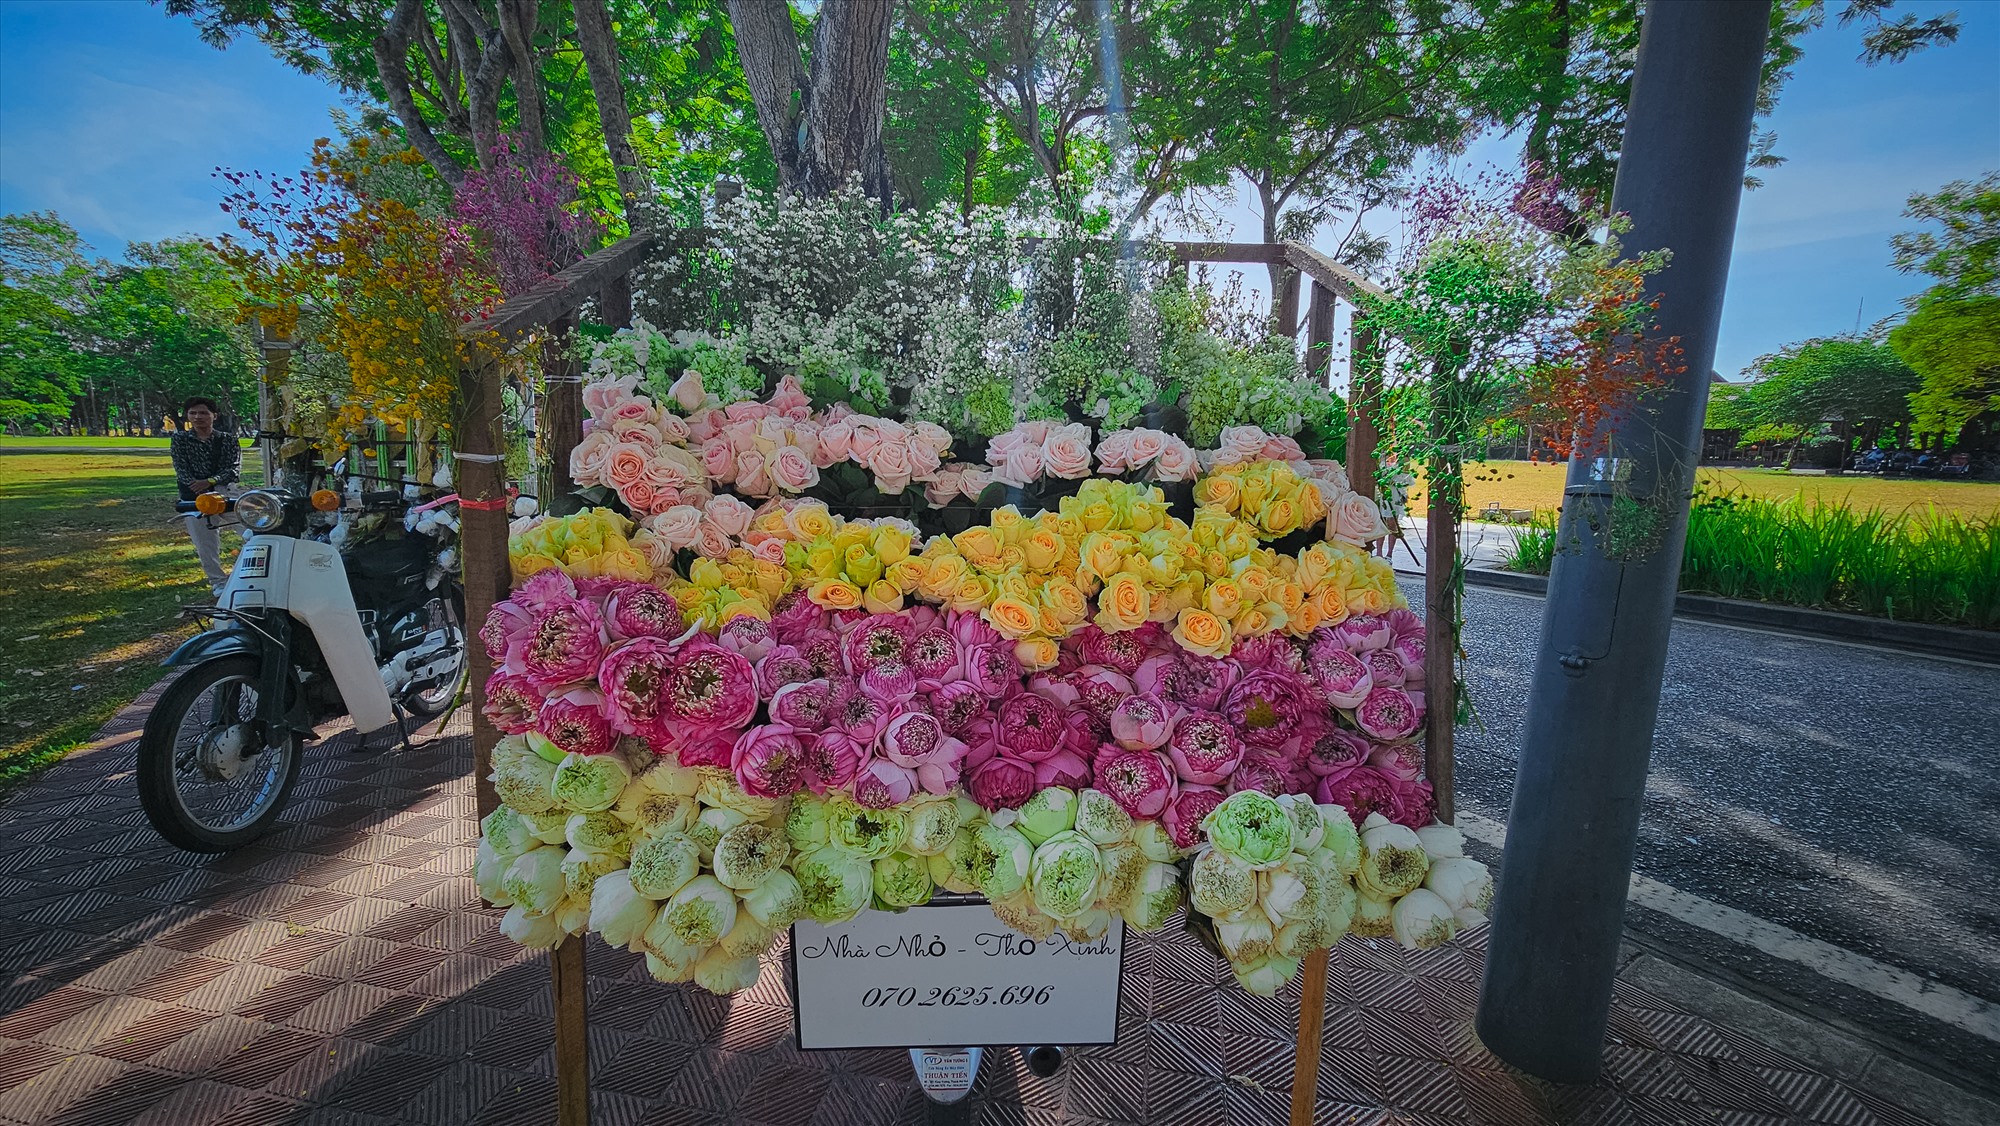  Những chiếc xe chở đầy hoa với nhiều loại hoa khác nhau, nổi bật, lấn át cả cái nóng của tiết trời xứ Huế. 